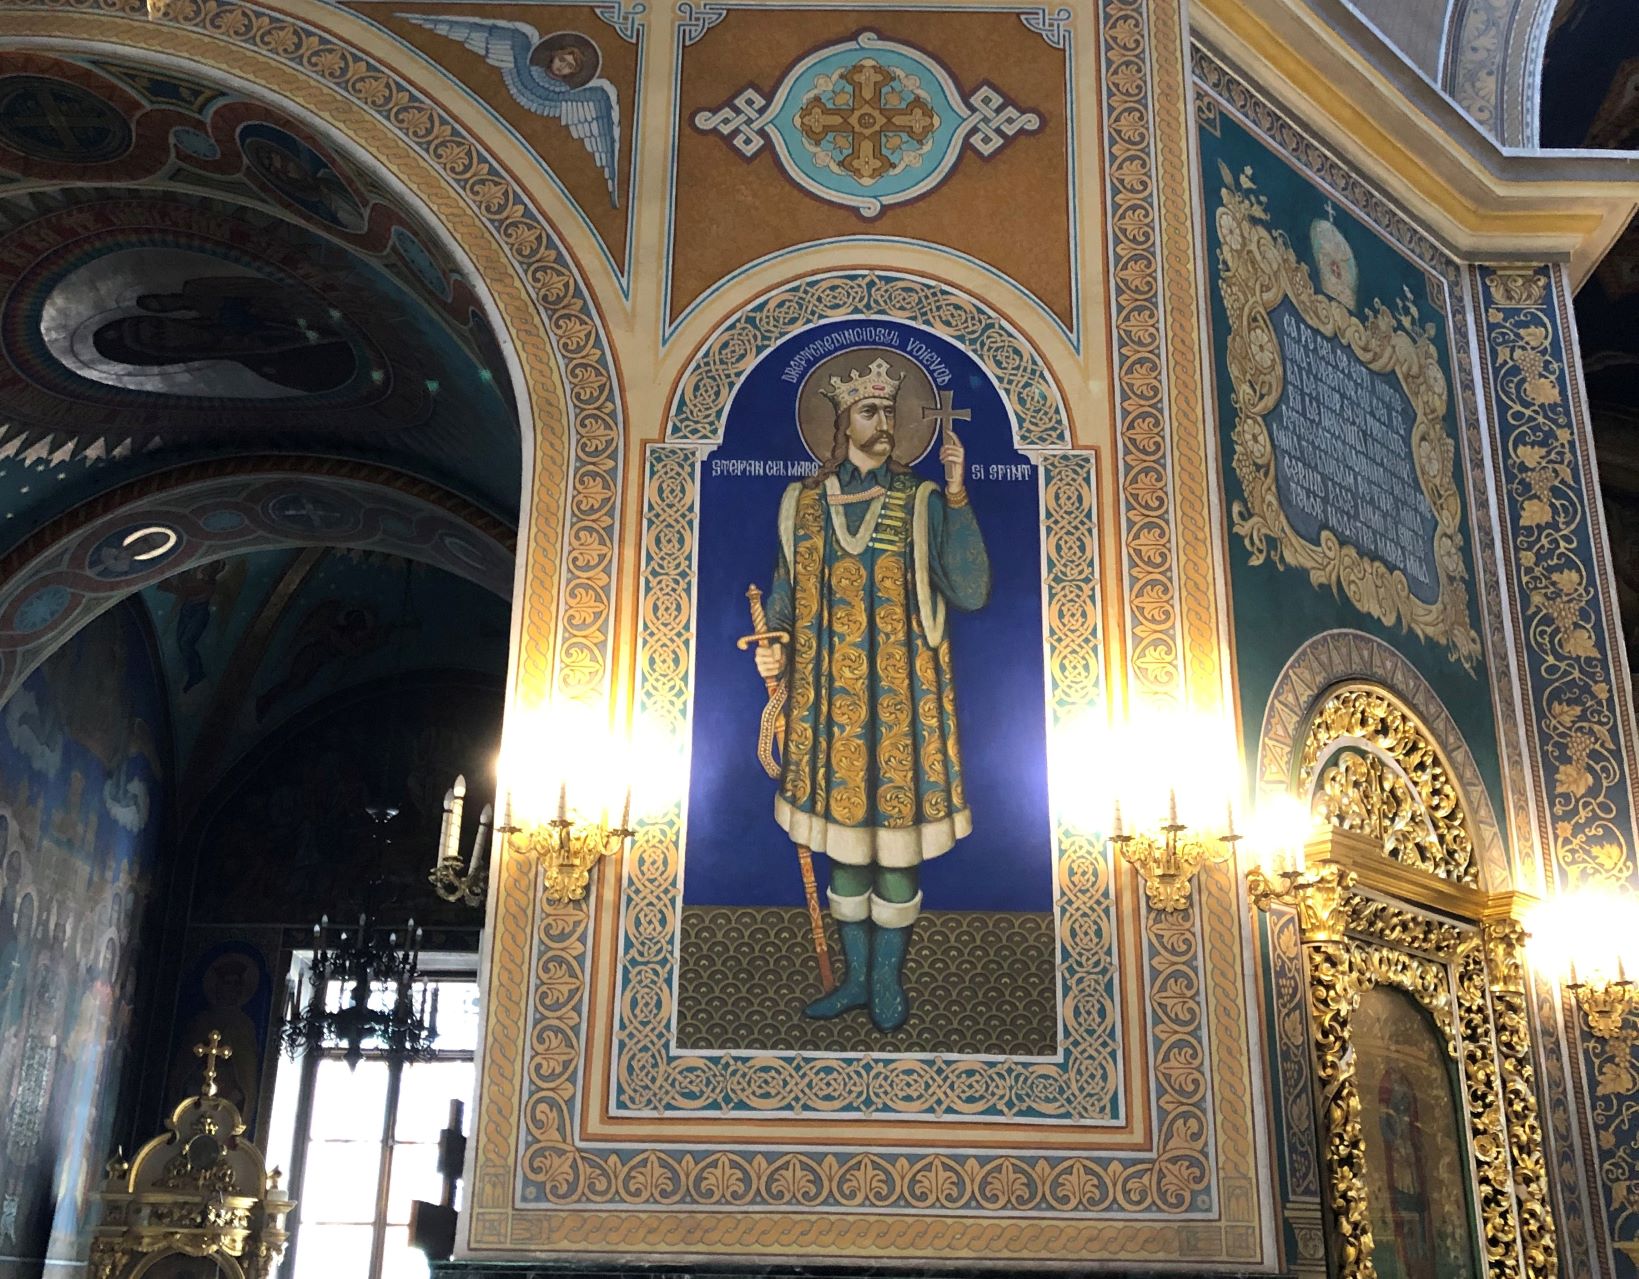 Господарь и воевода молдавского княжества Стефан III - изображение в Центральном Соборе г. Кишинева.